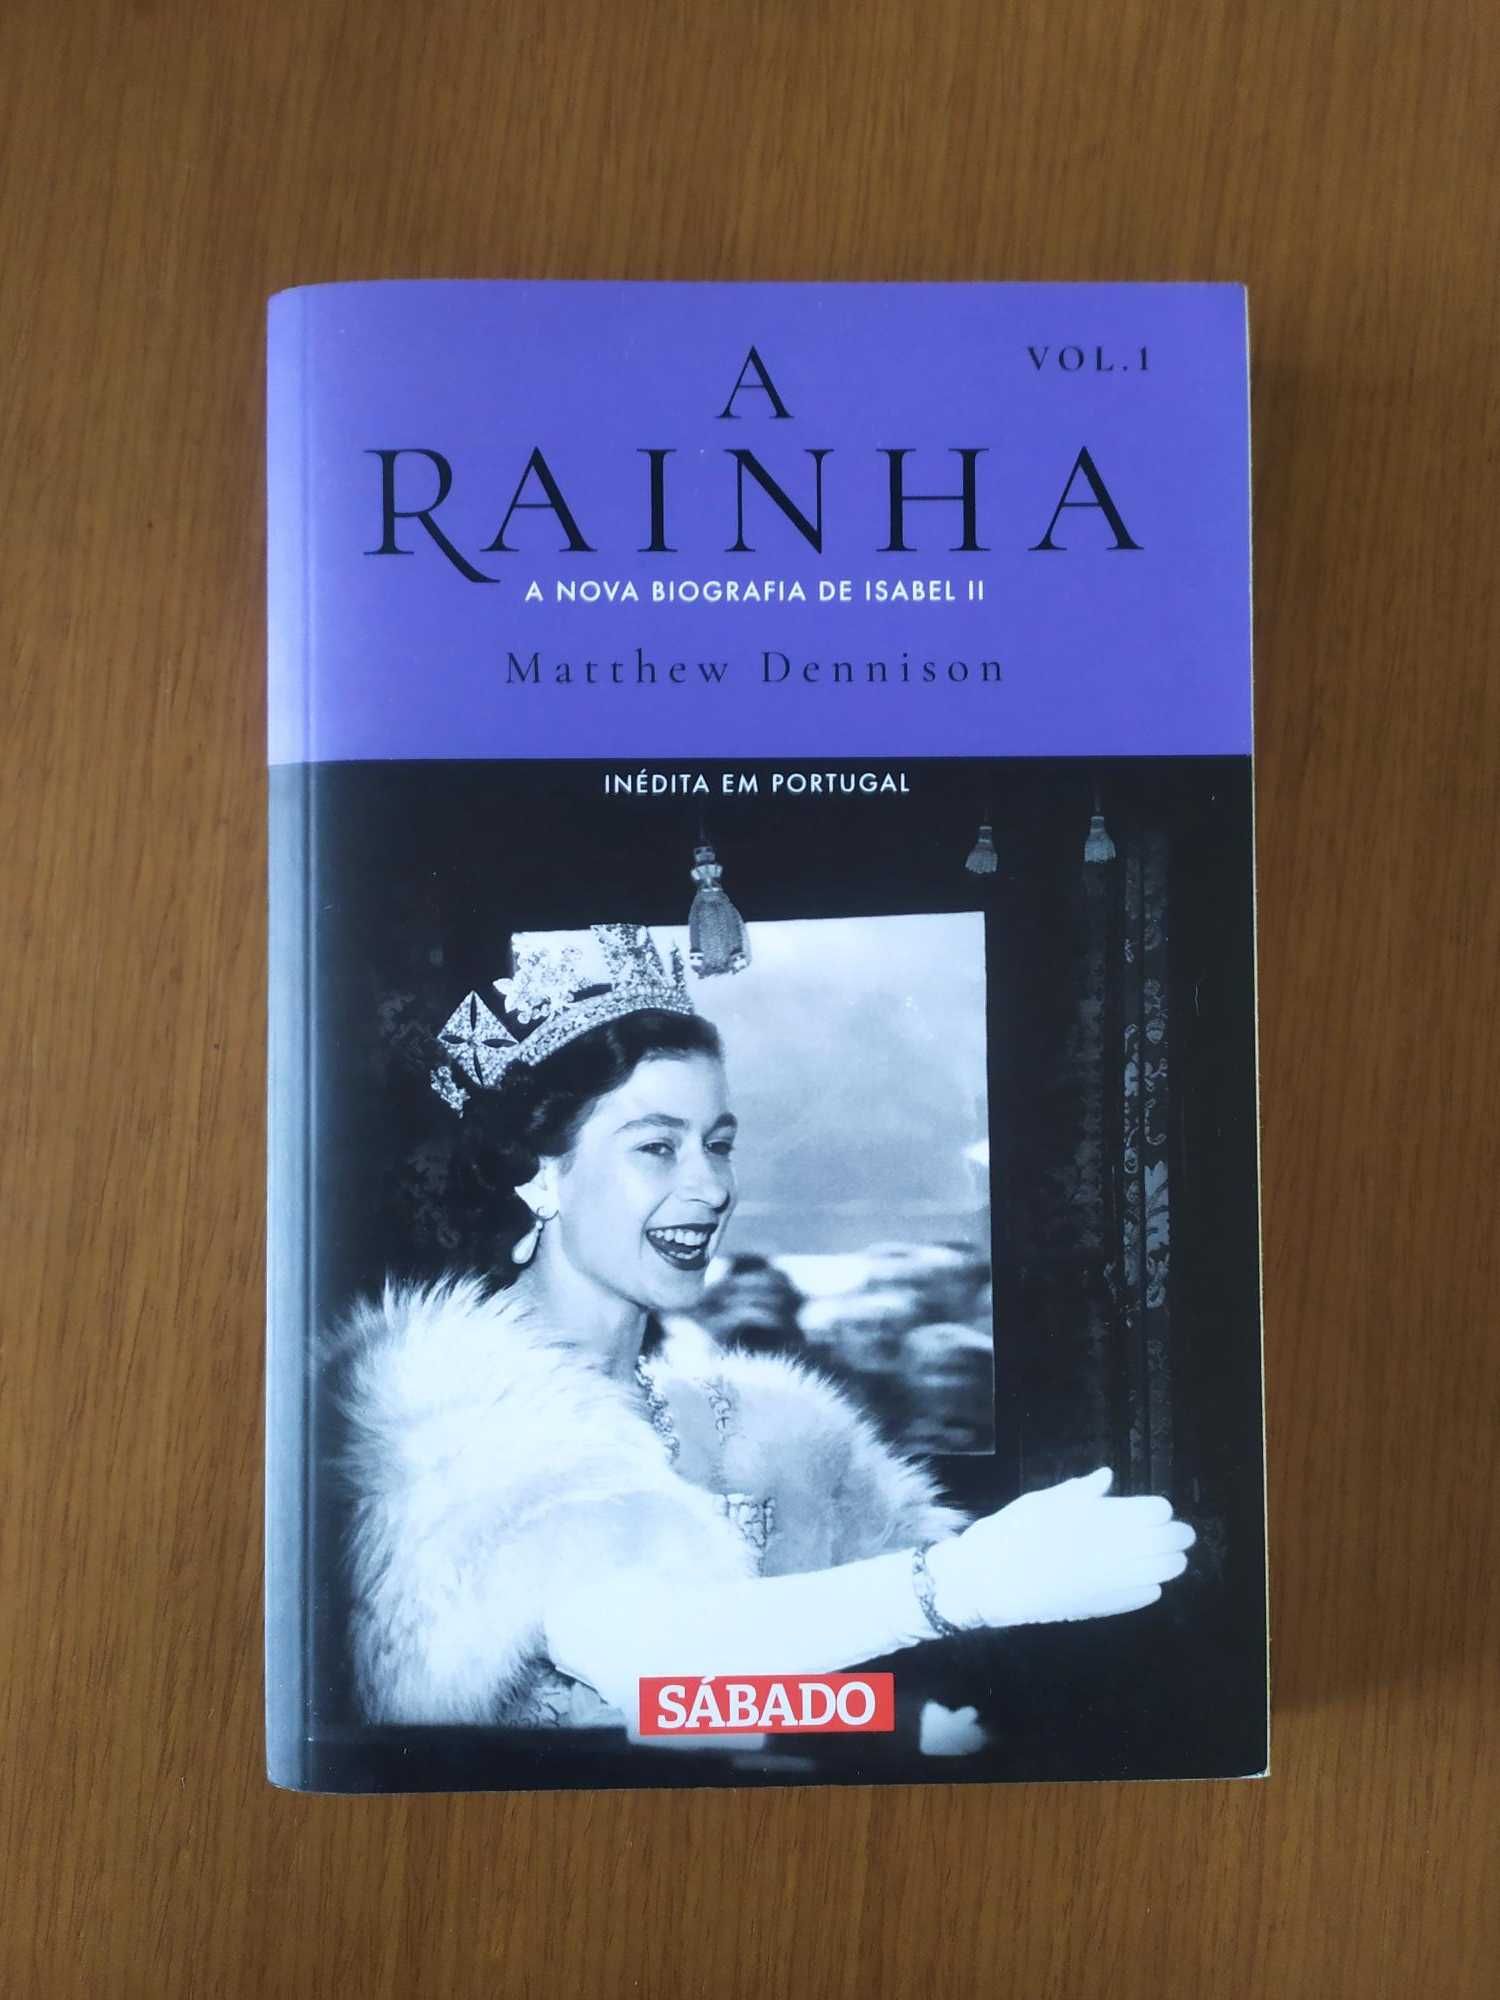 A Rainha - A nova biografia de Isabel II